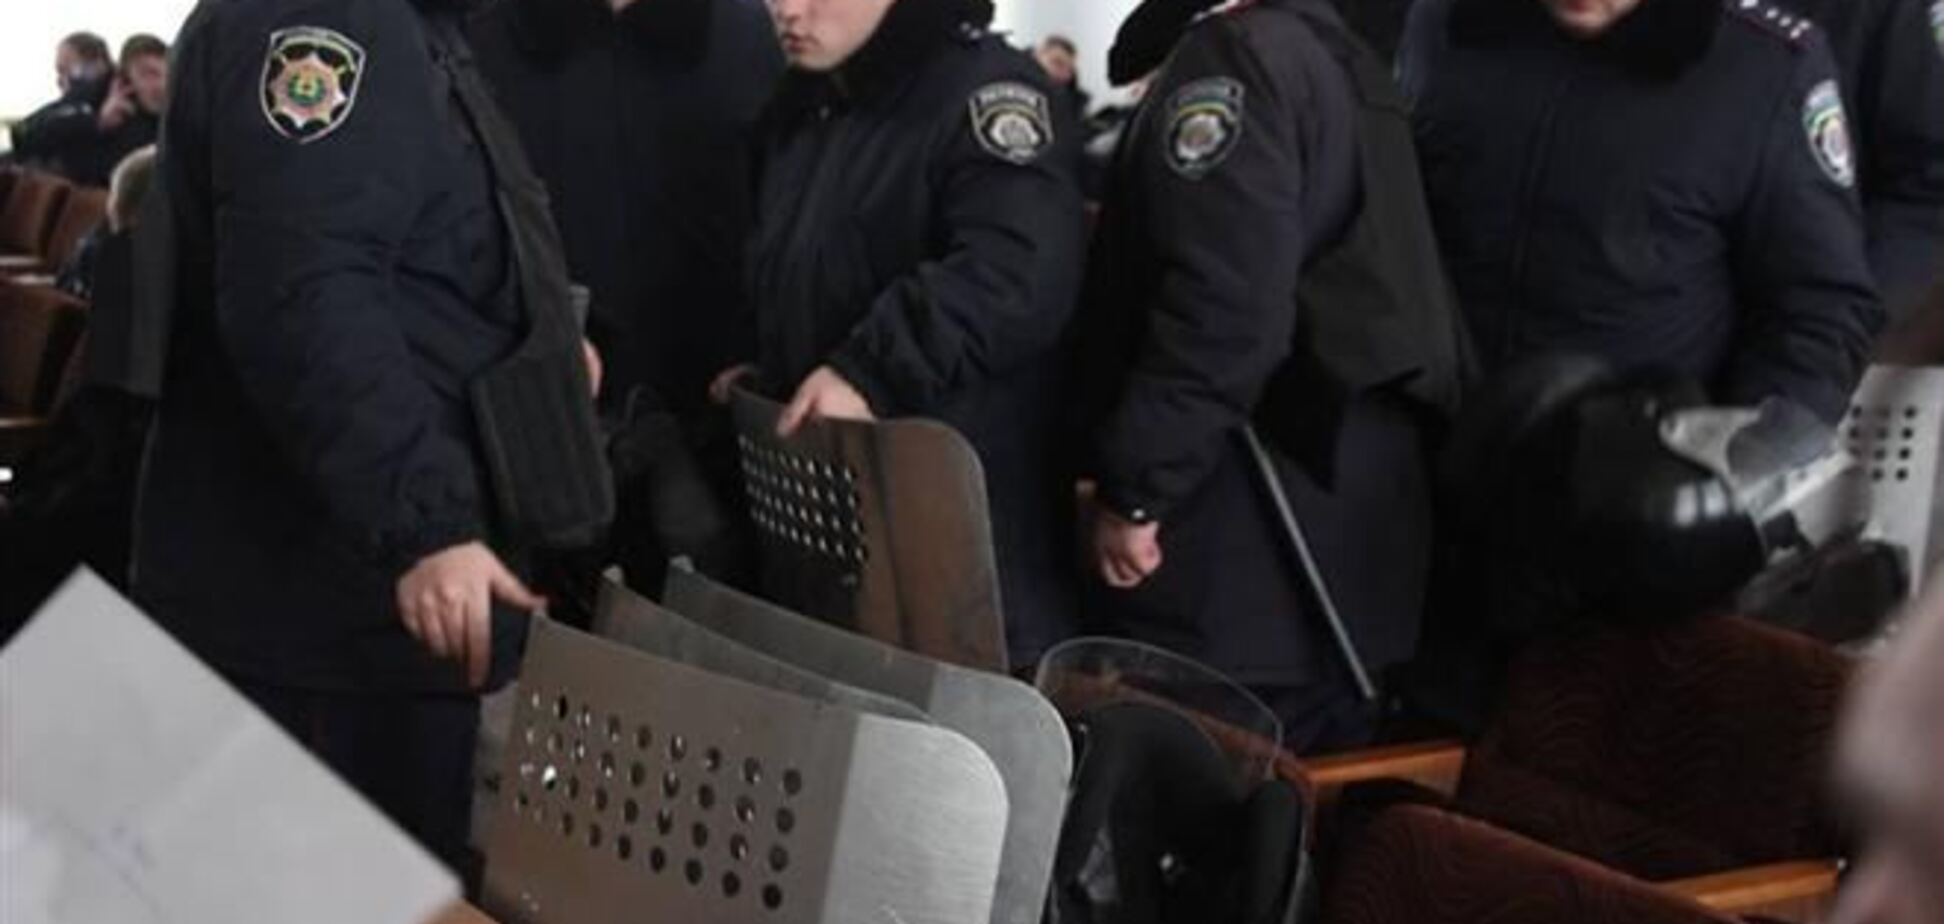 В Донецке ждут захвата админзданий: милиции выдали дубинки и щиты